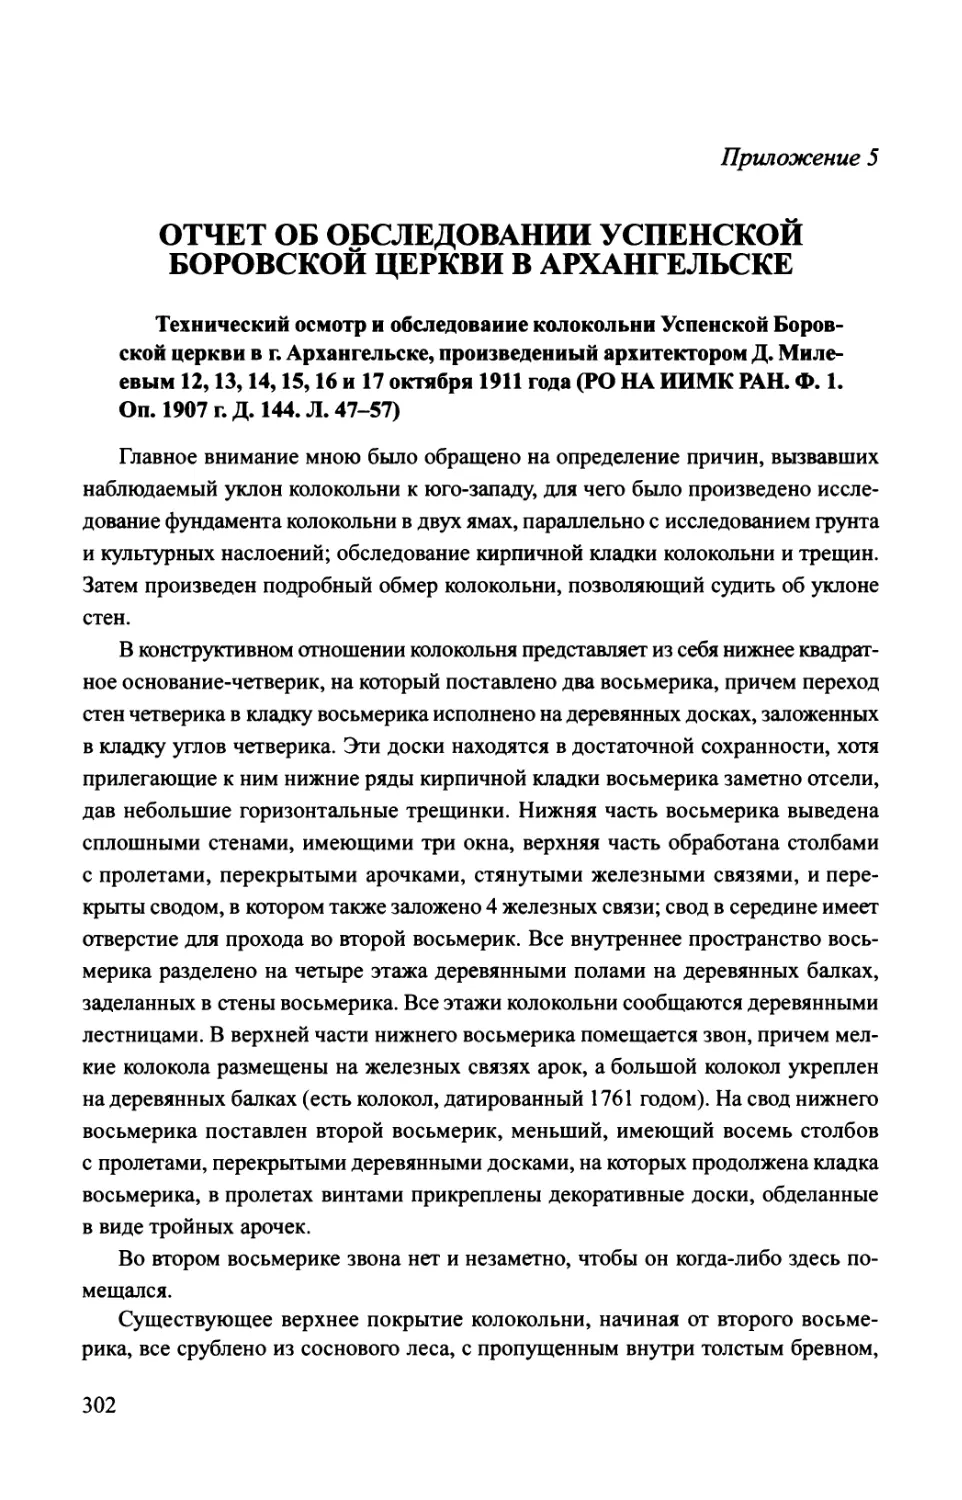 Приложение 5. Отчет об обследовании Успенской Боровской церкви в Архангельске